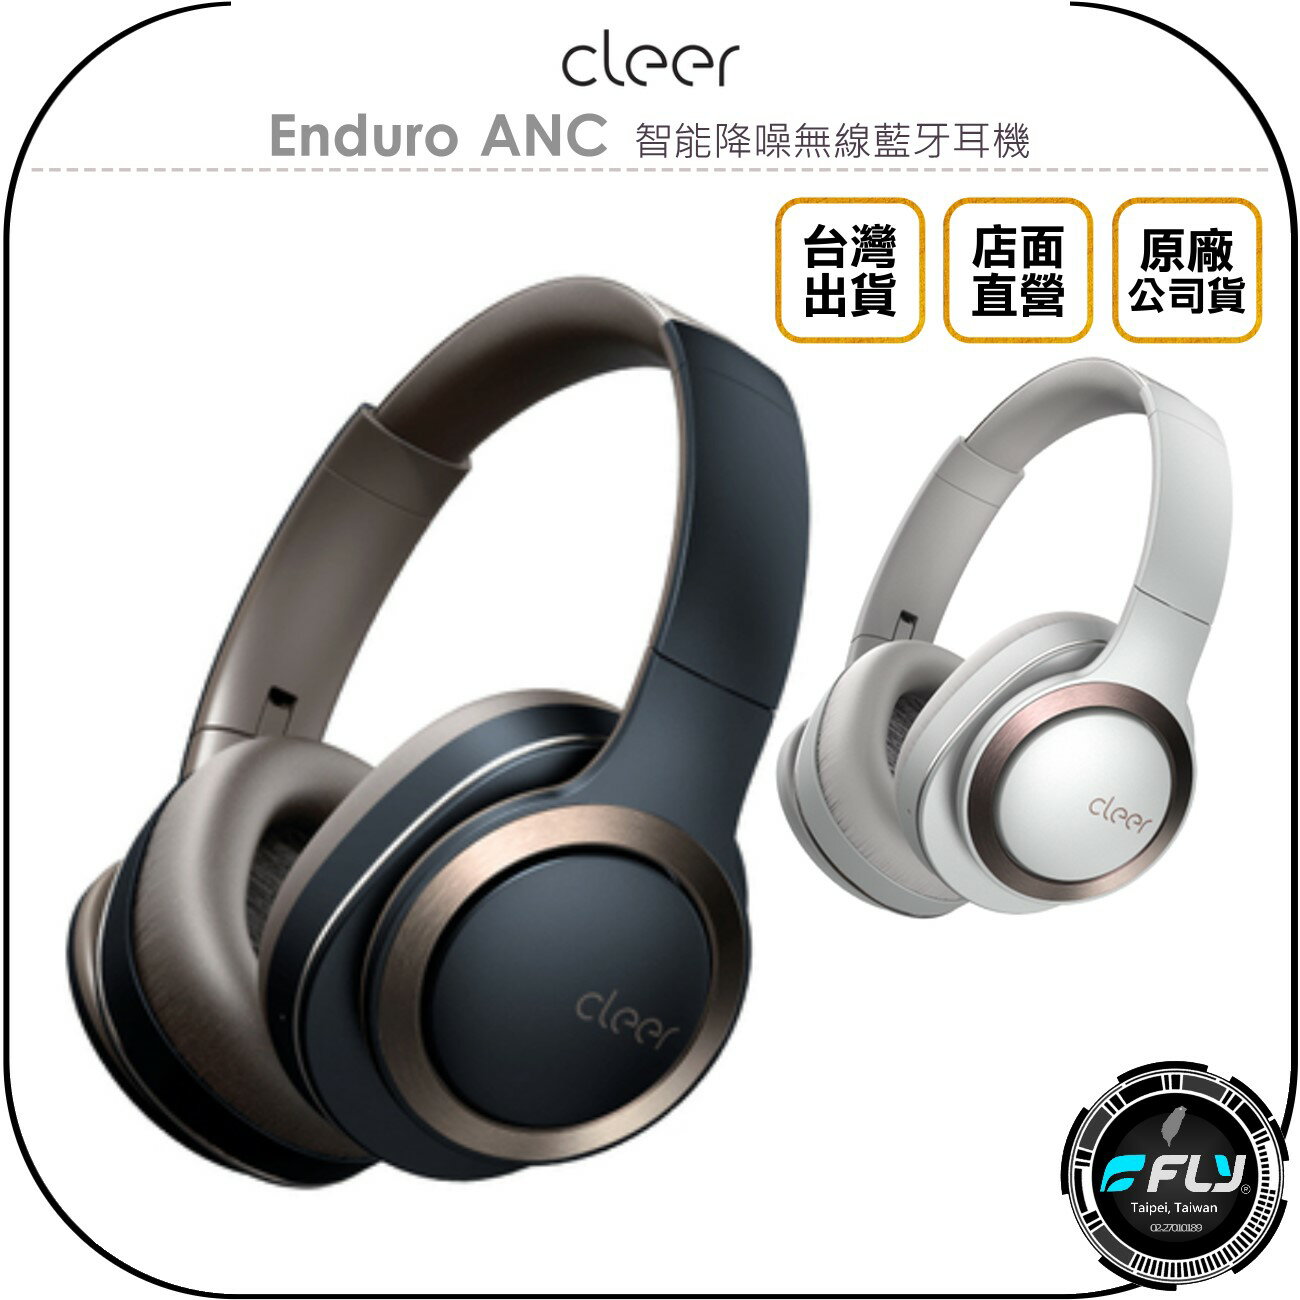 《飛翔無線3C》Cleer Enduro ANC 智能降噪無線藍牙耳機◉公司貨◉藍芽5.0◉頭戴耳罩◉支援NFC